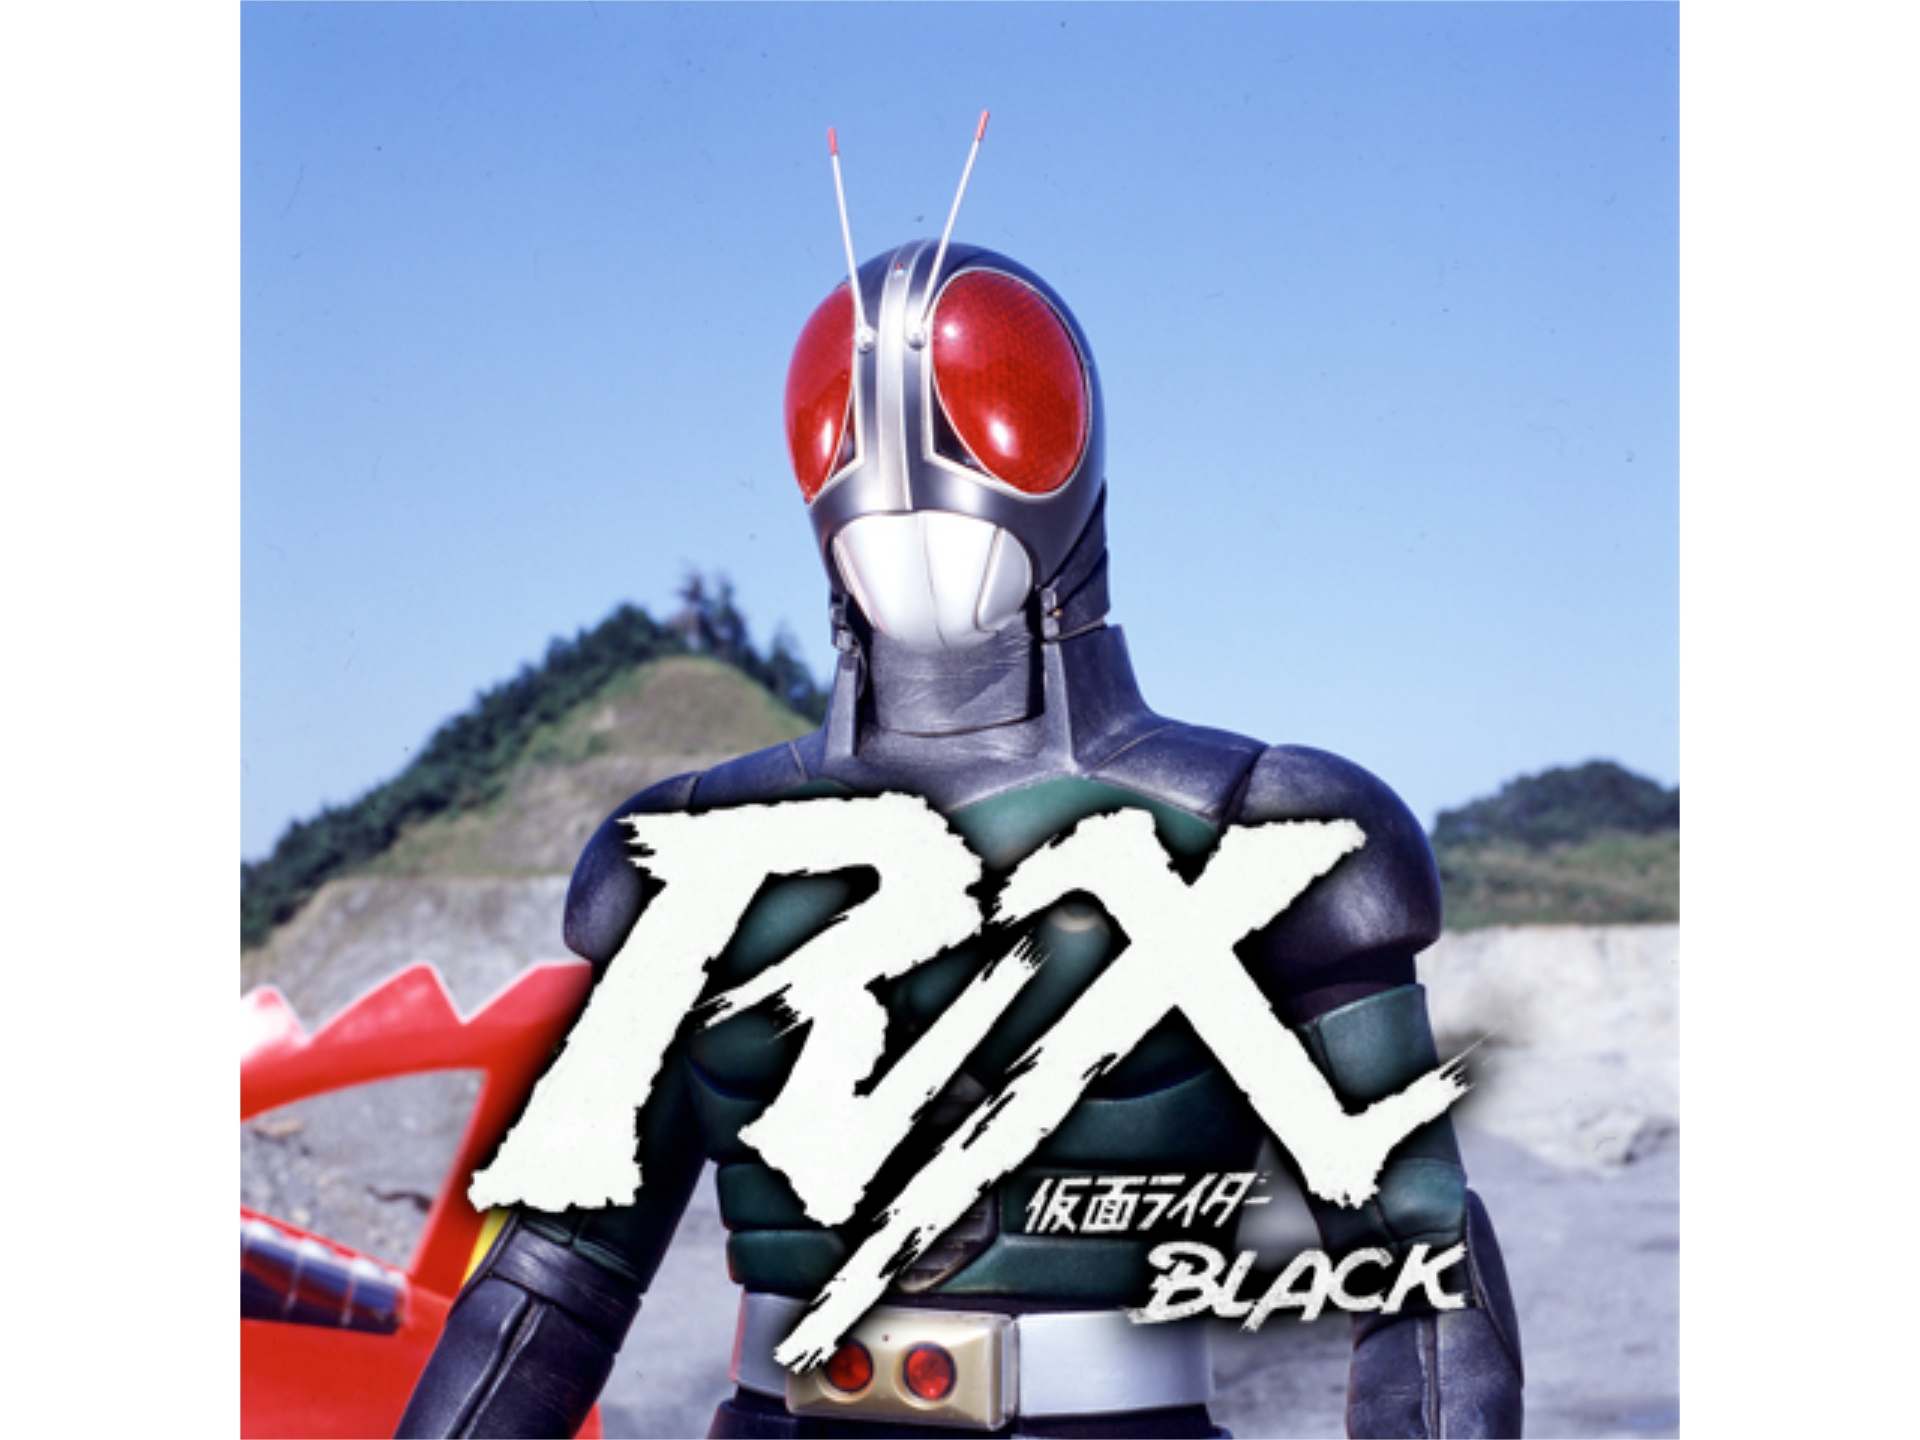 仮面ライダーblack Rx 第1話 第5話のまとめフル動画 初月無料 動画配信サービスのビデオマーケット